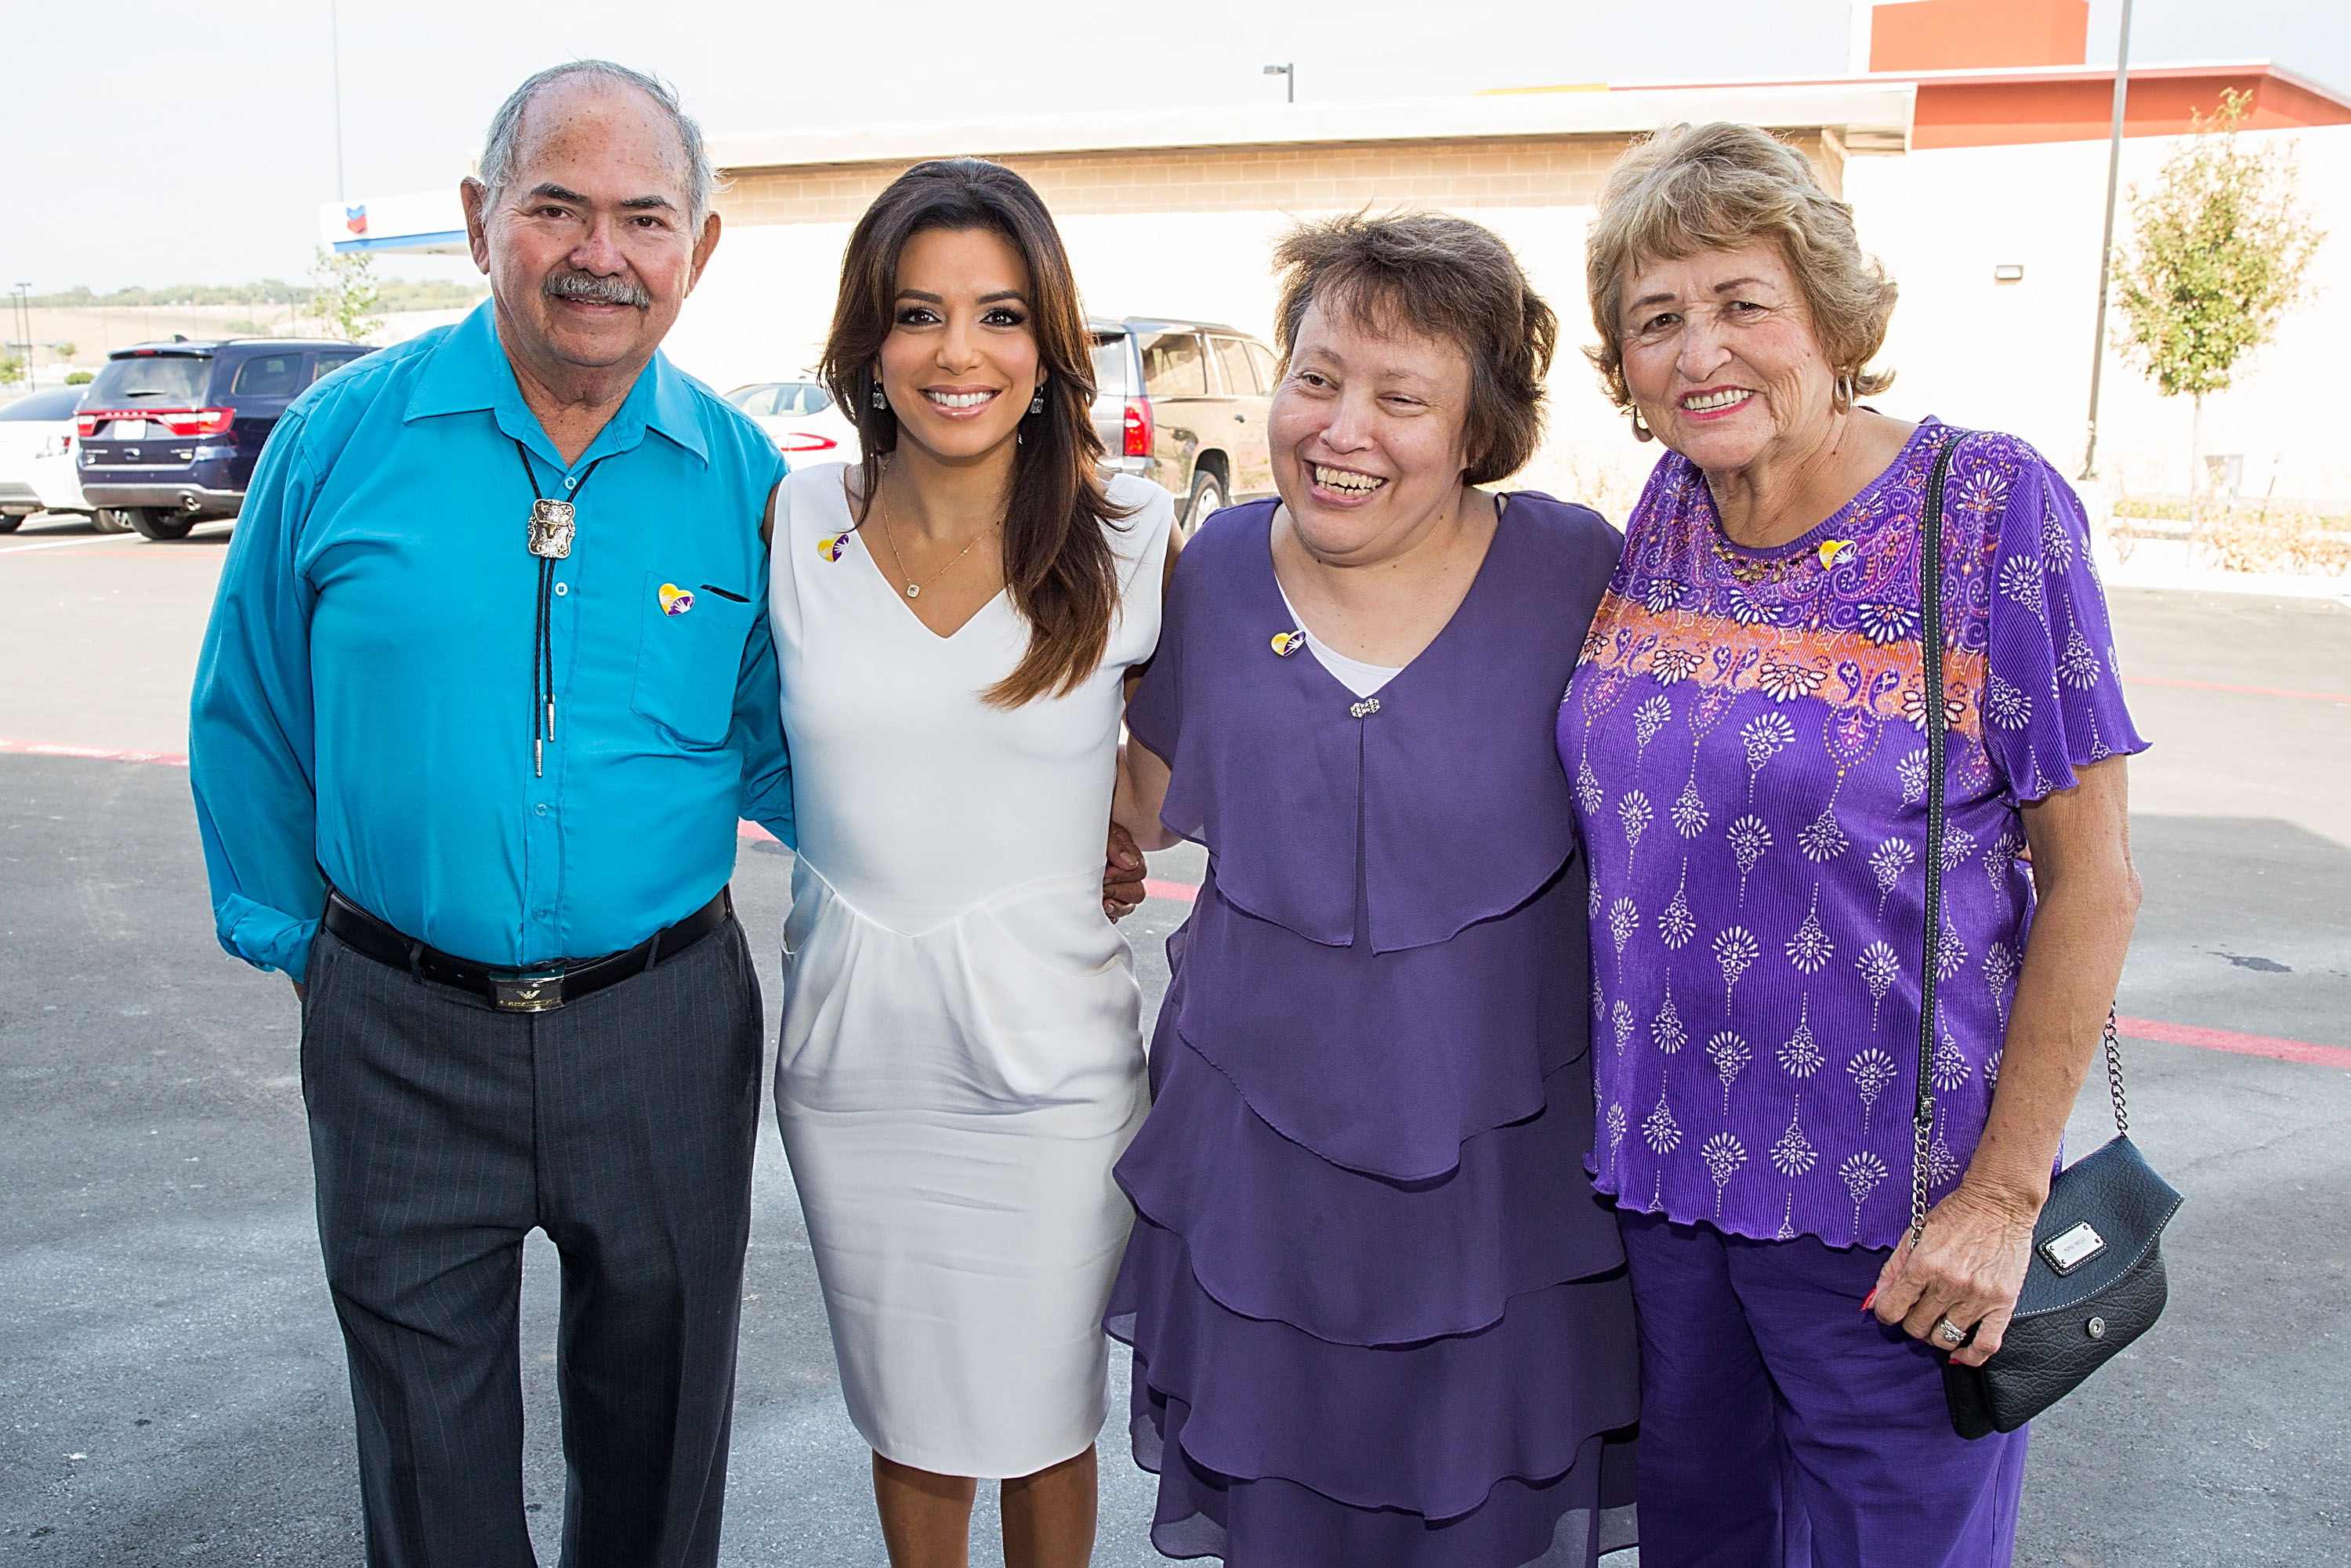 Enrique Longoria, Jr., Eva, Liza, and Ella Longoria on October 30, 2014 in San Antonio, Texas | Source: Getty Images